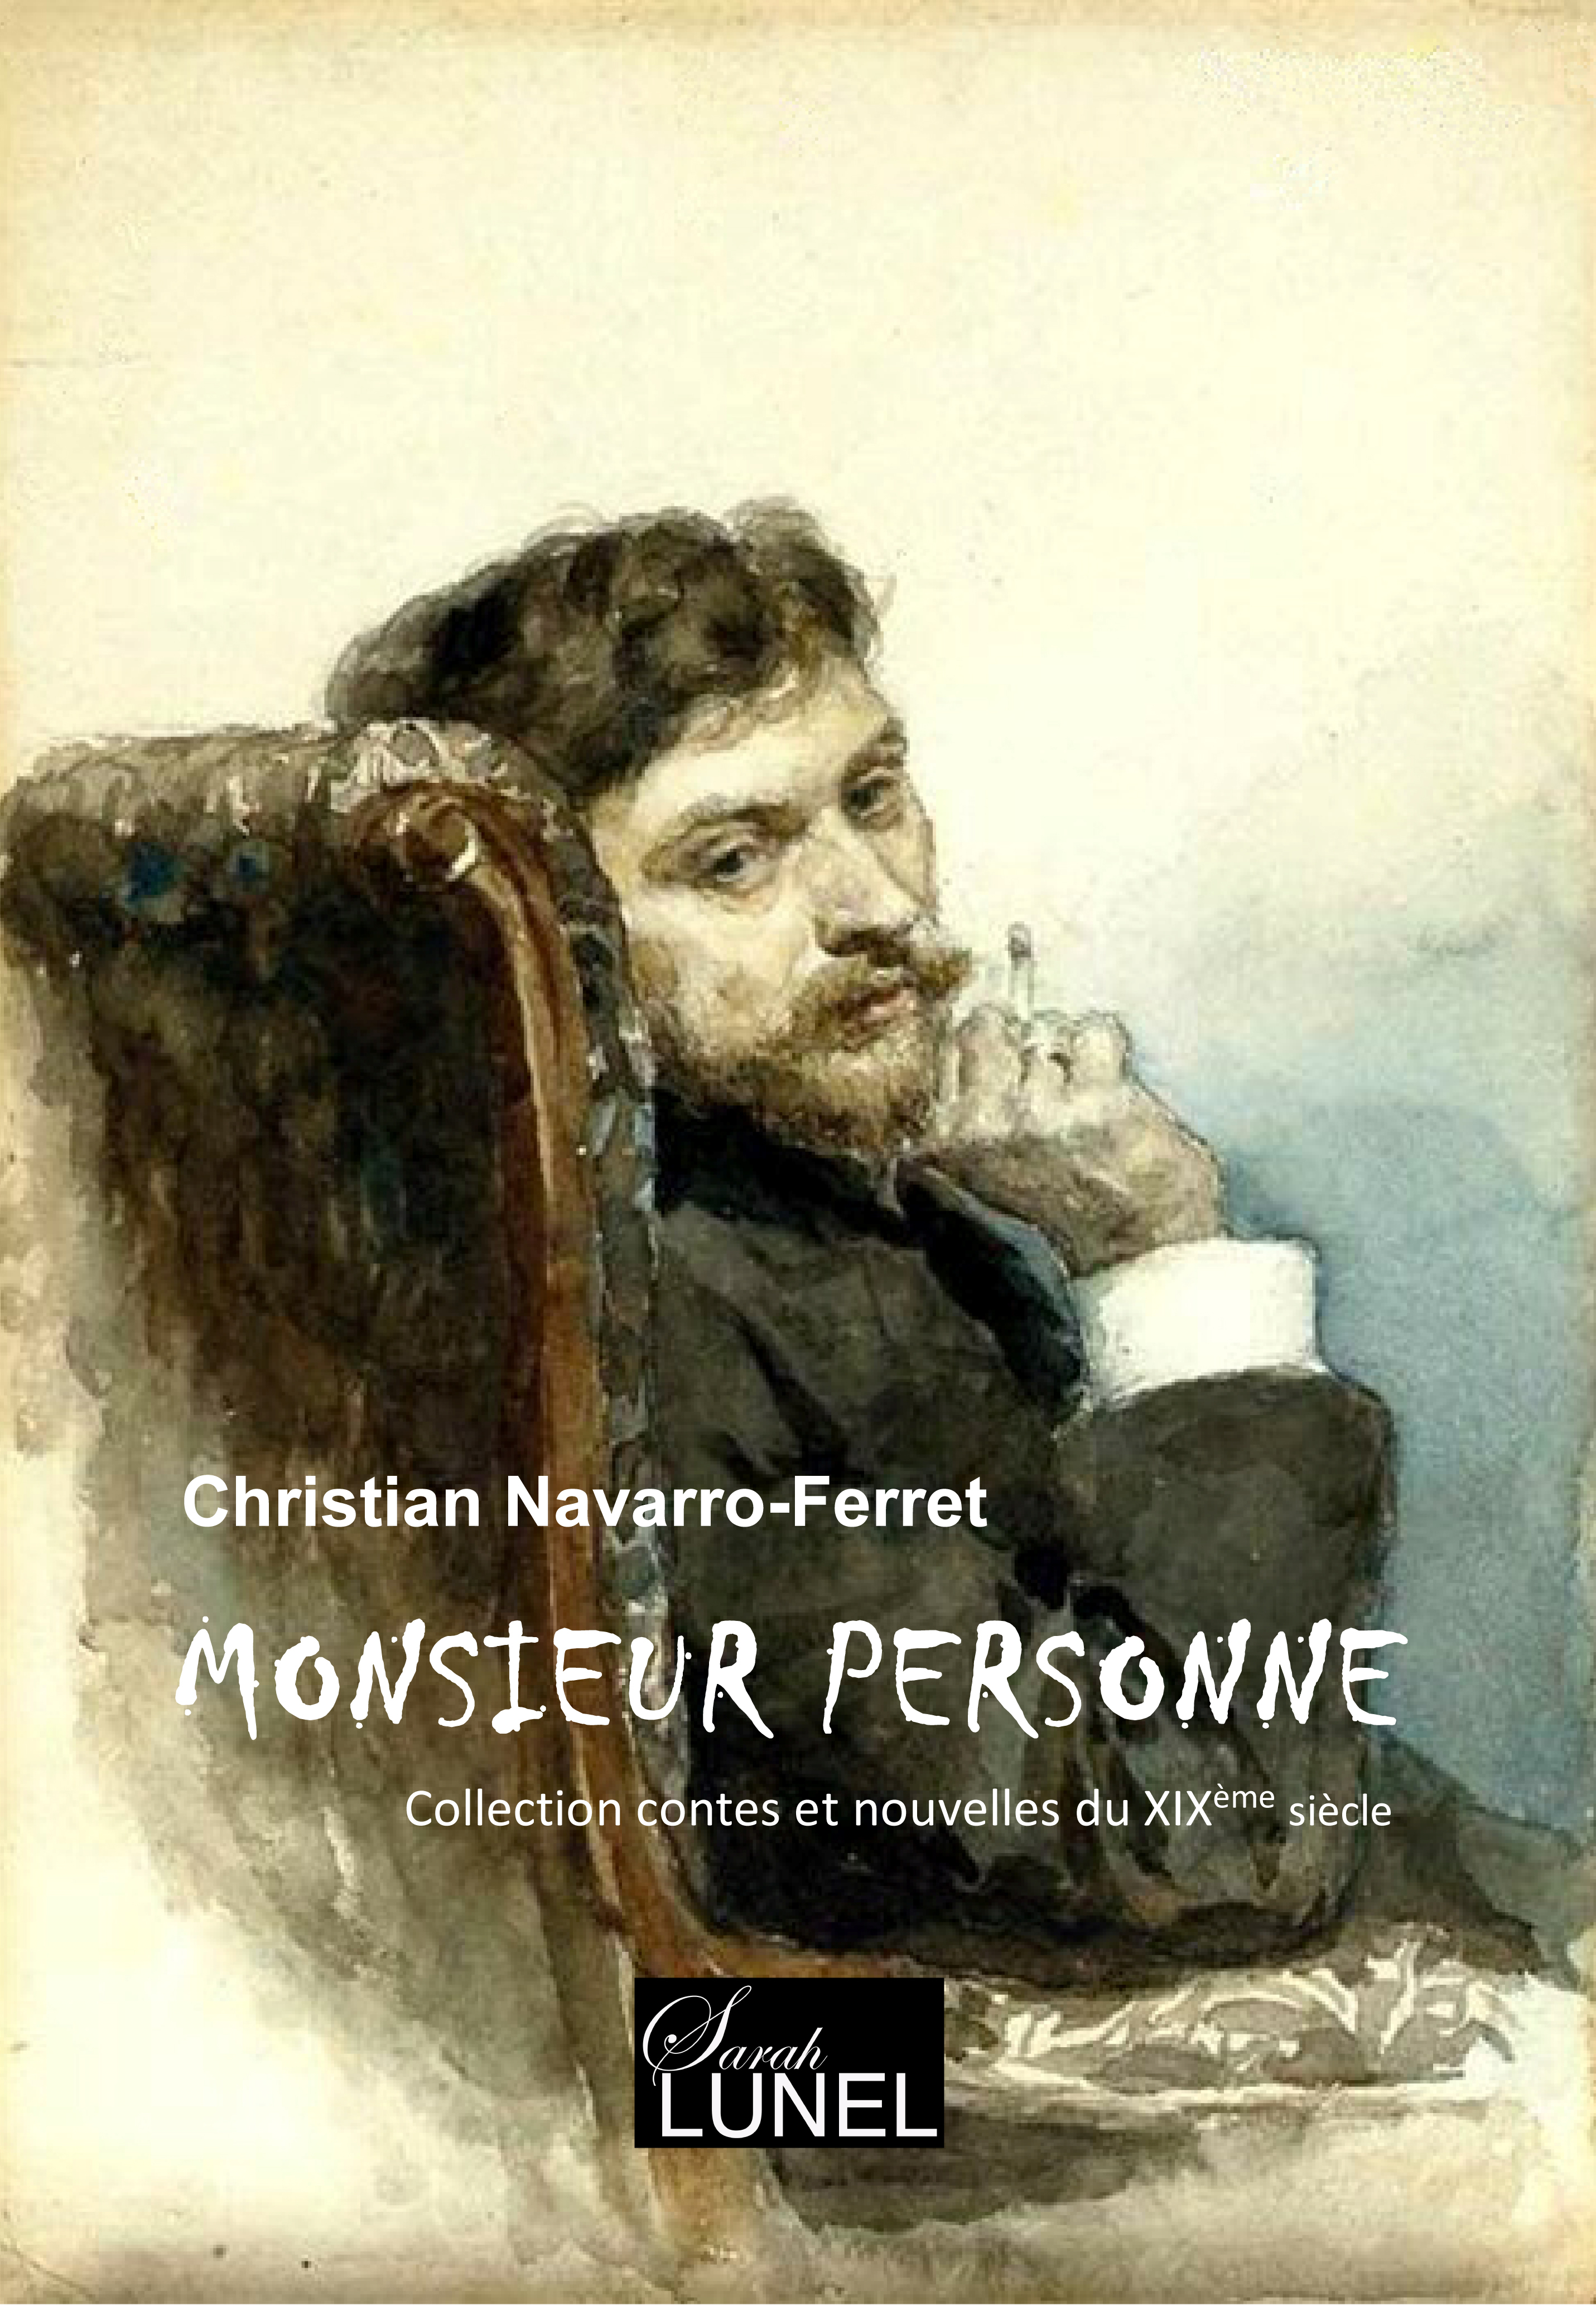 Monsieur_Personne_-_Couverture_officielle_-_face_2